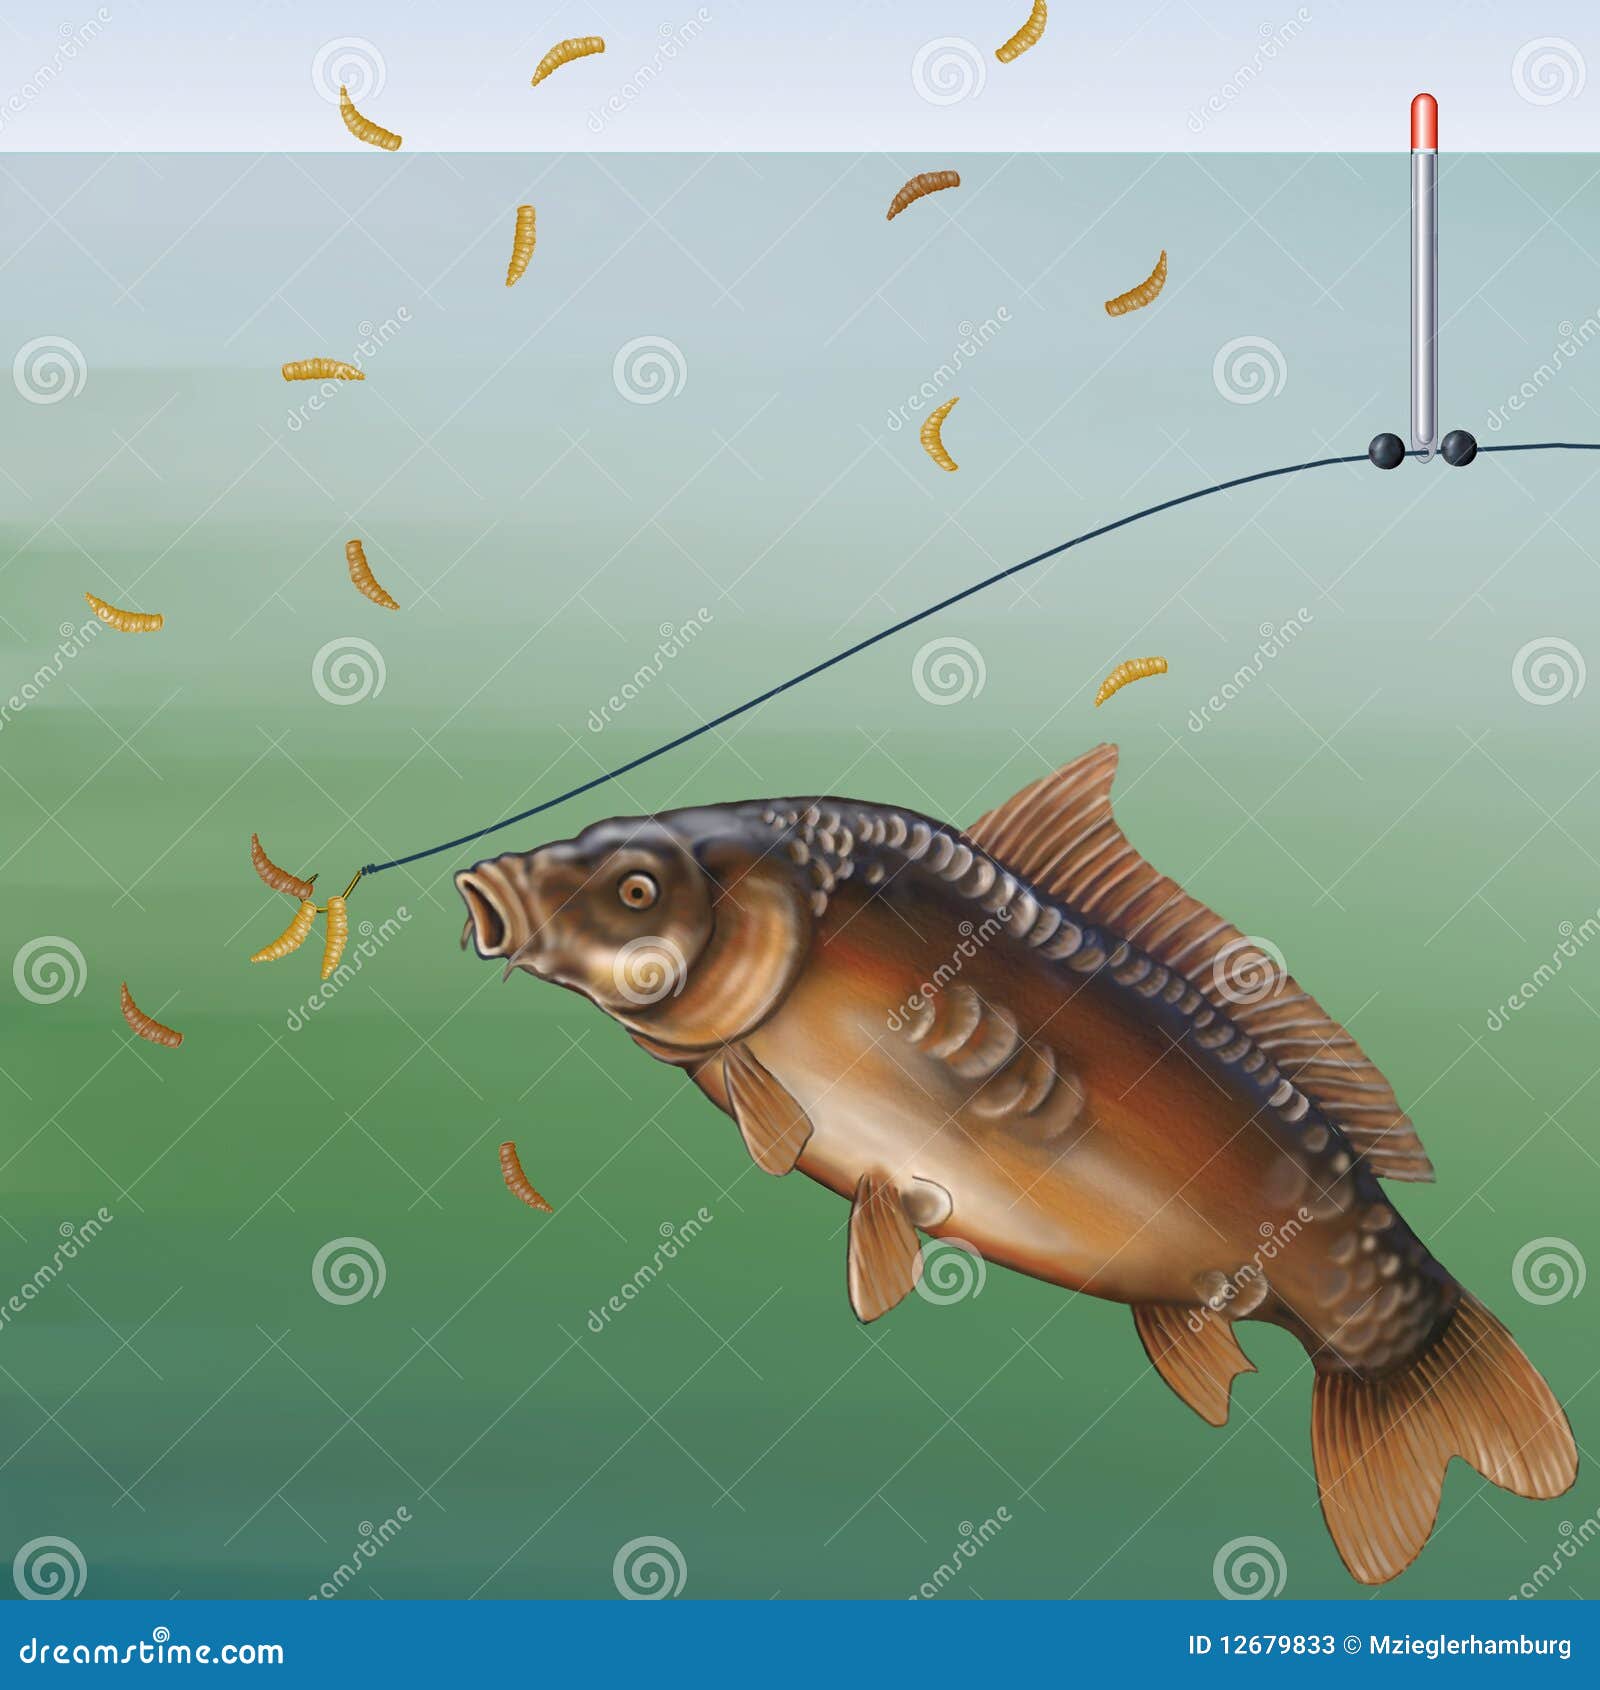 Carp fishing stock illustration. Illustration of maggot - 12679833